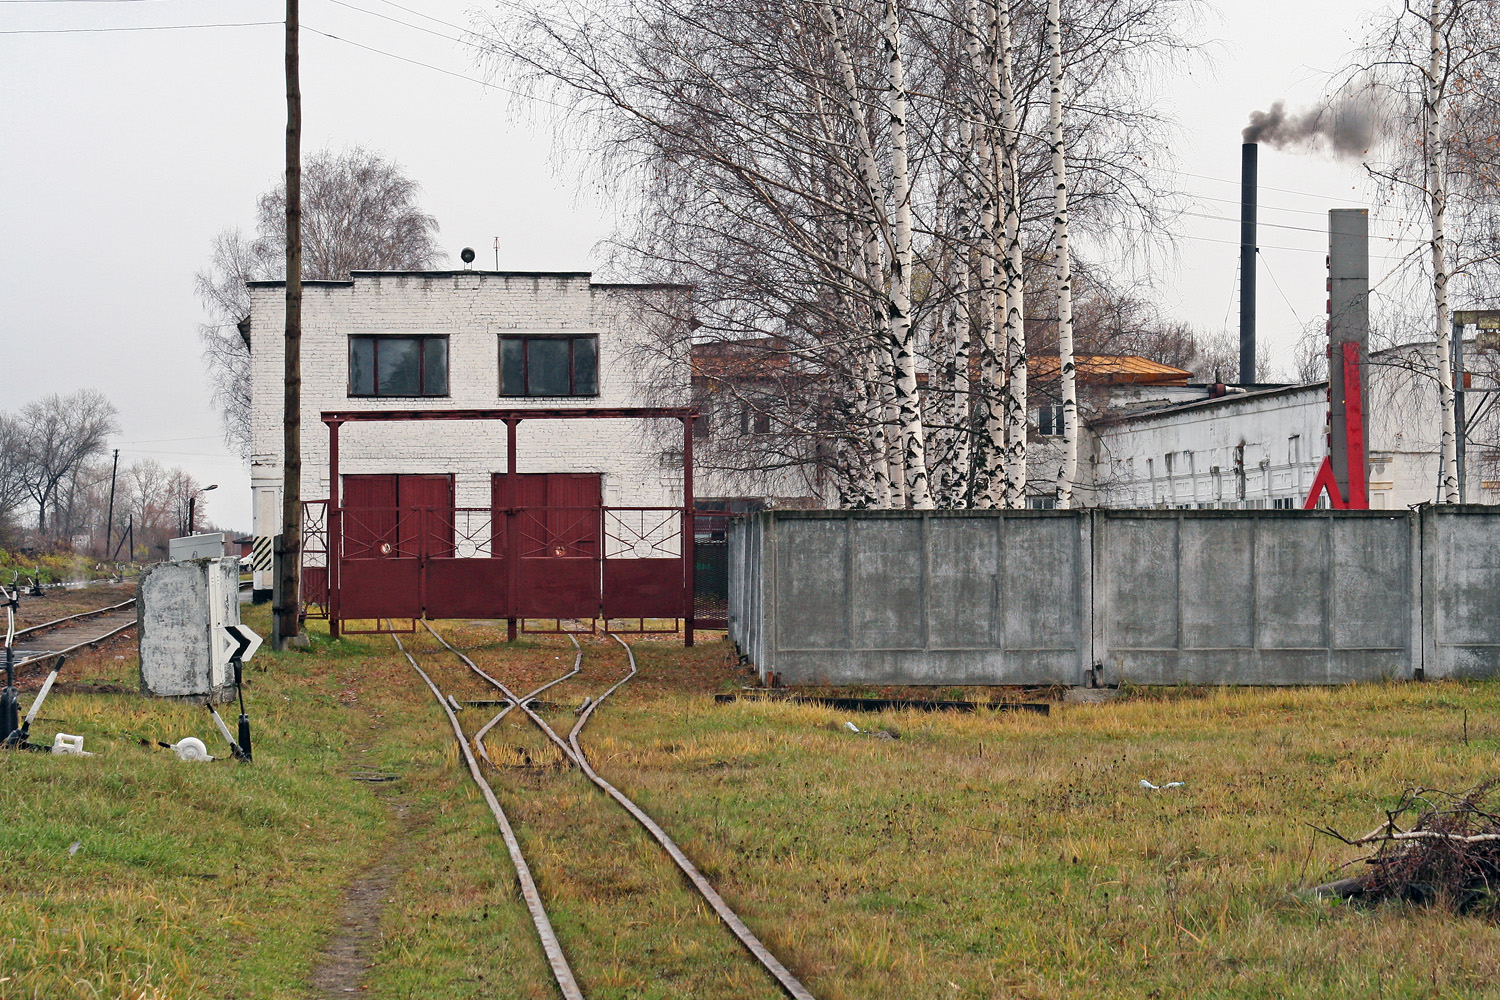 Gorky Railway — Stations & ways